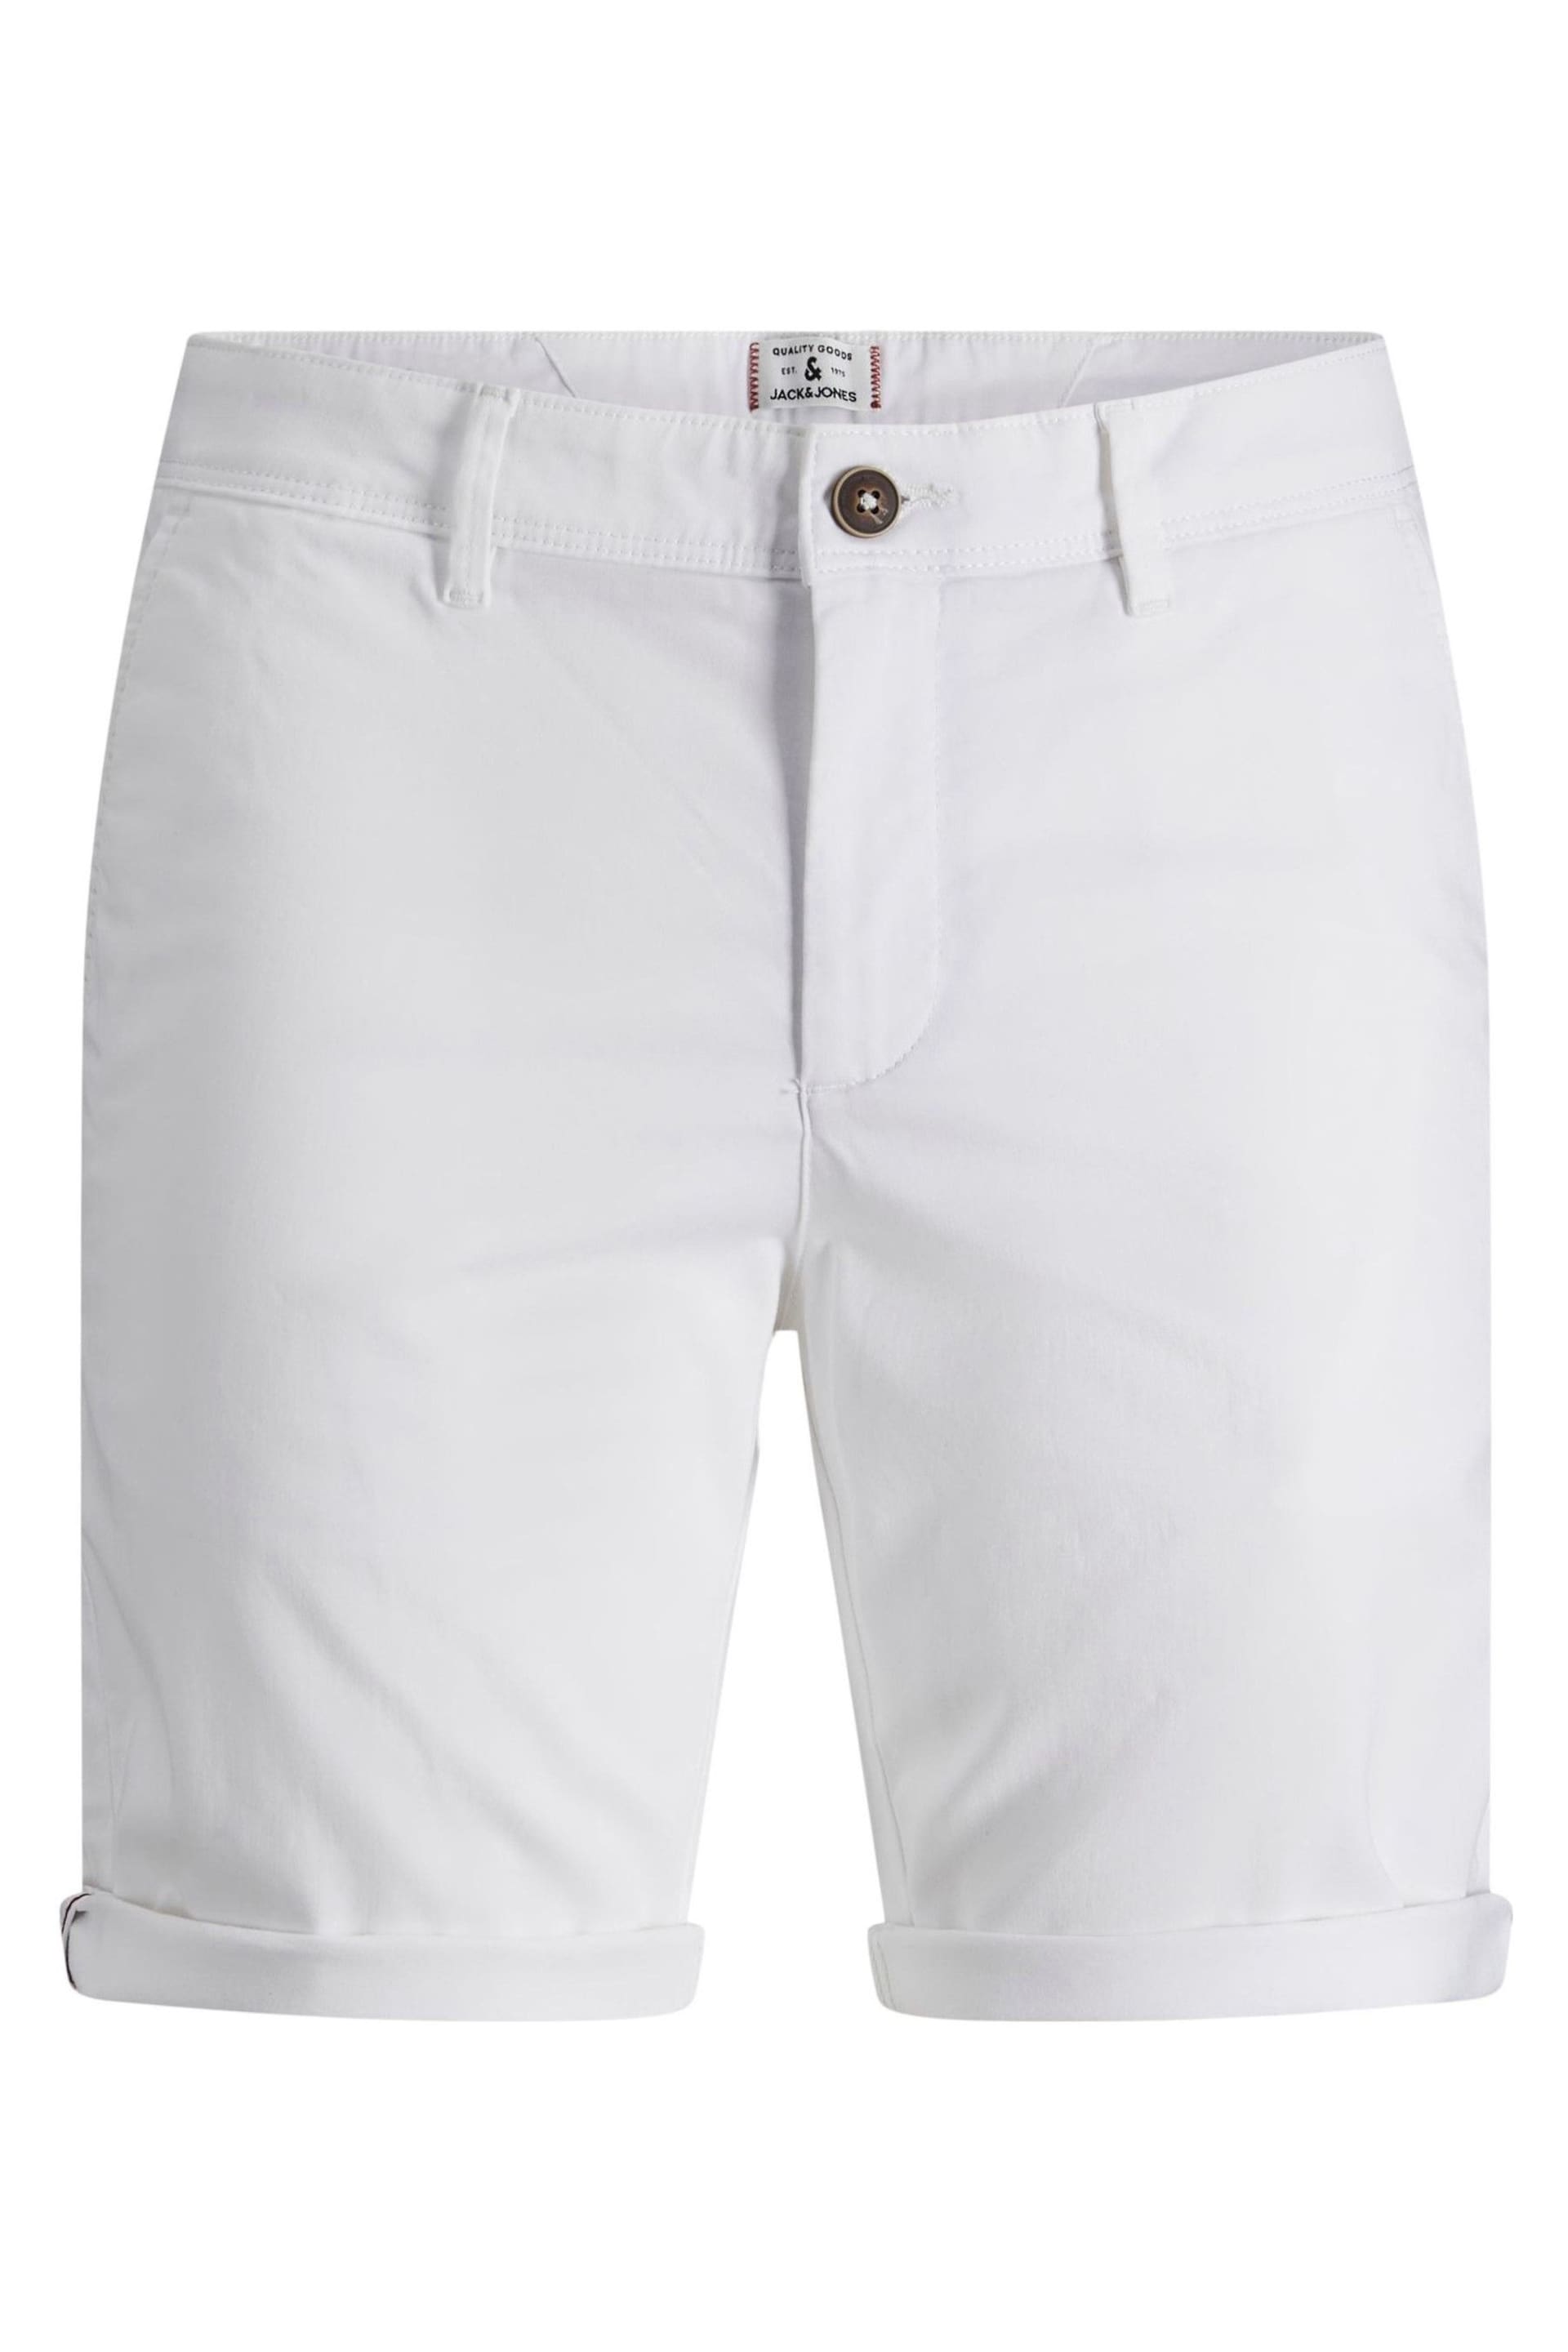 JACK & JONES White Slim Chino Shorts - Image 6 of 7